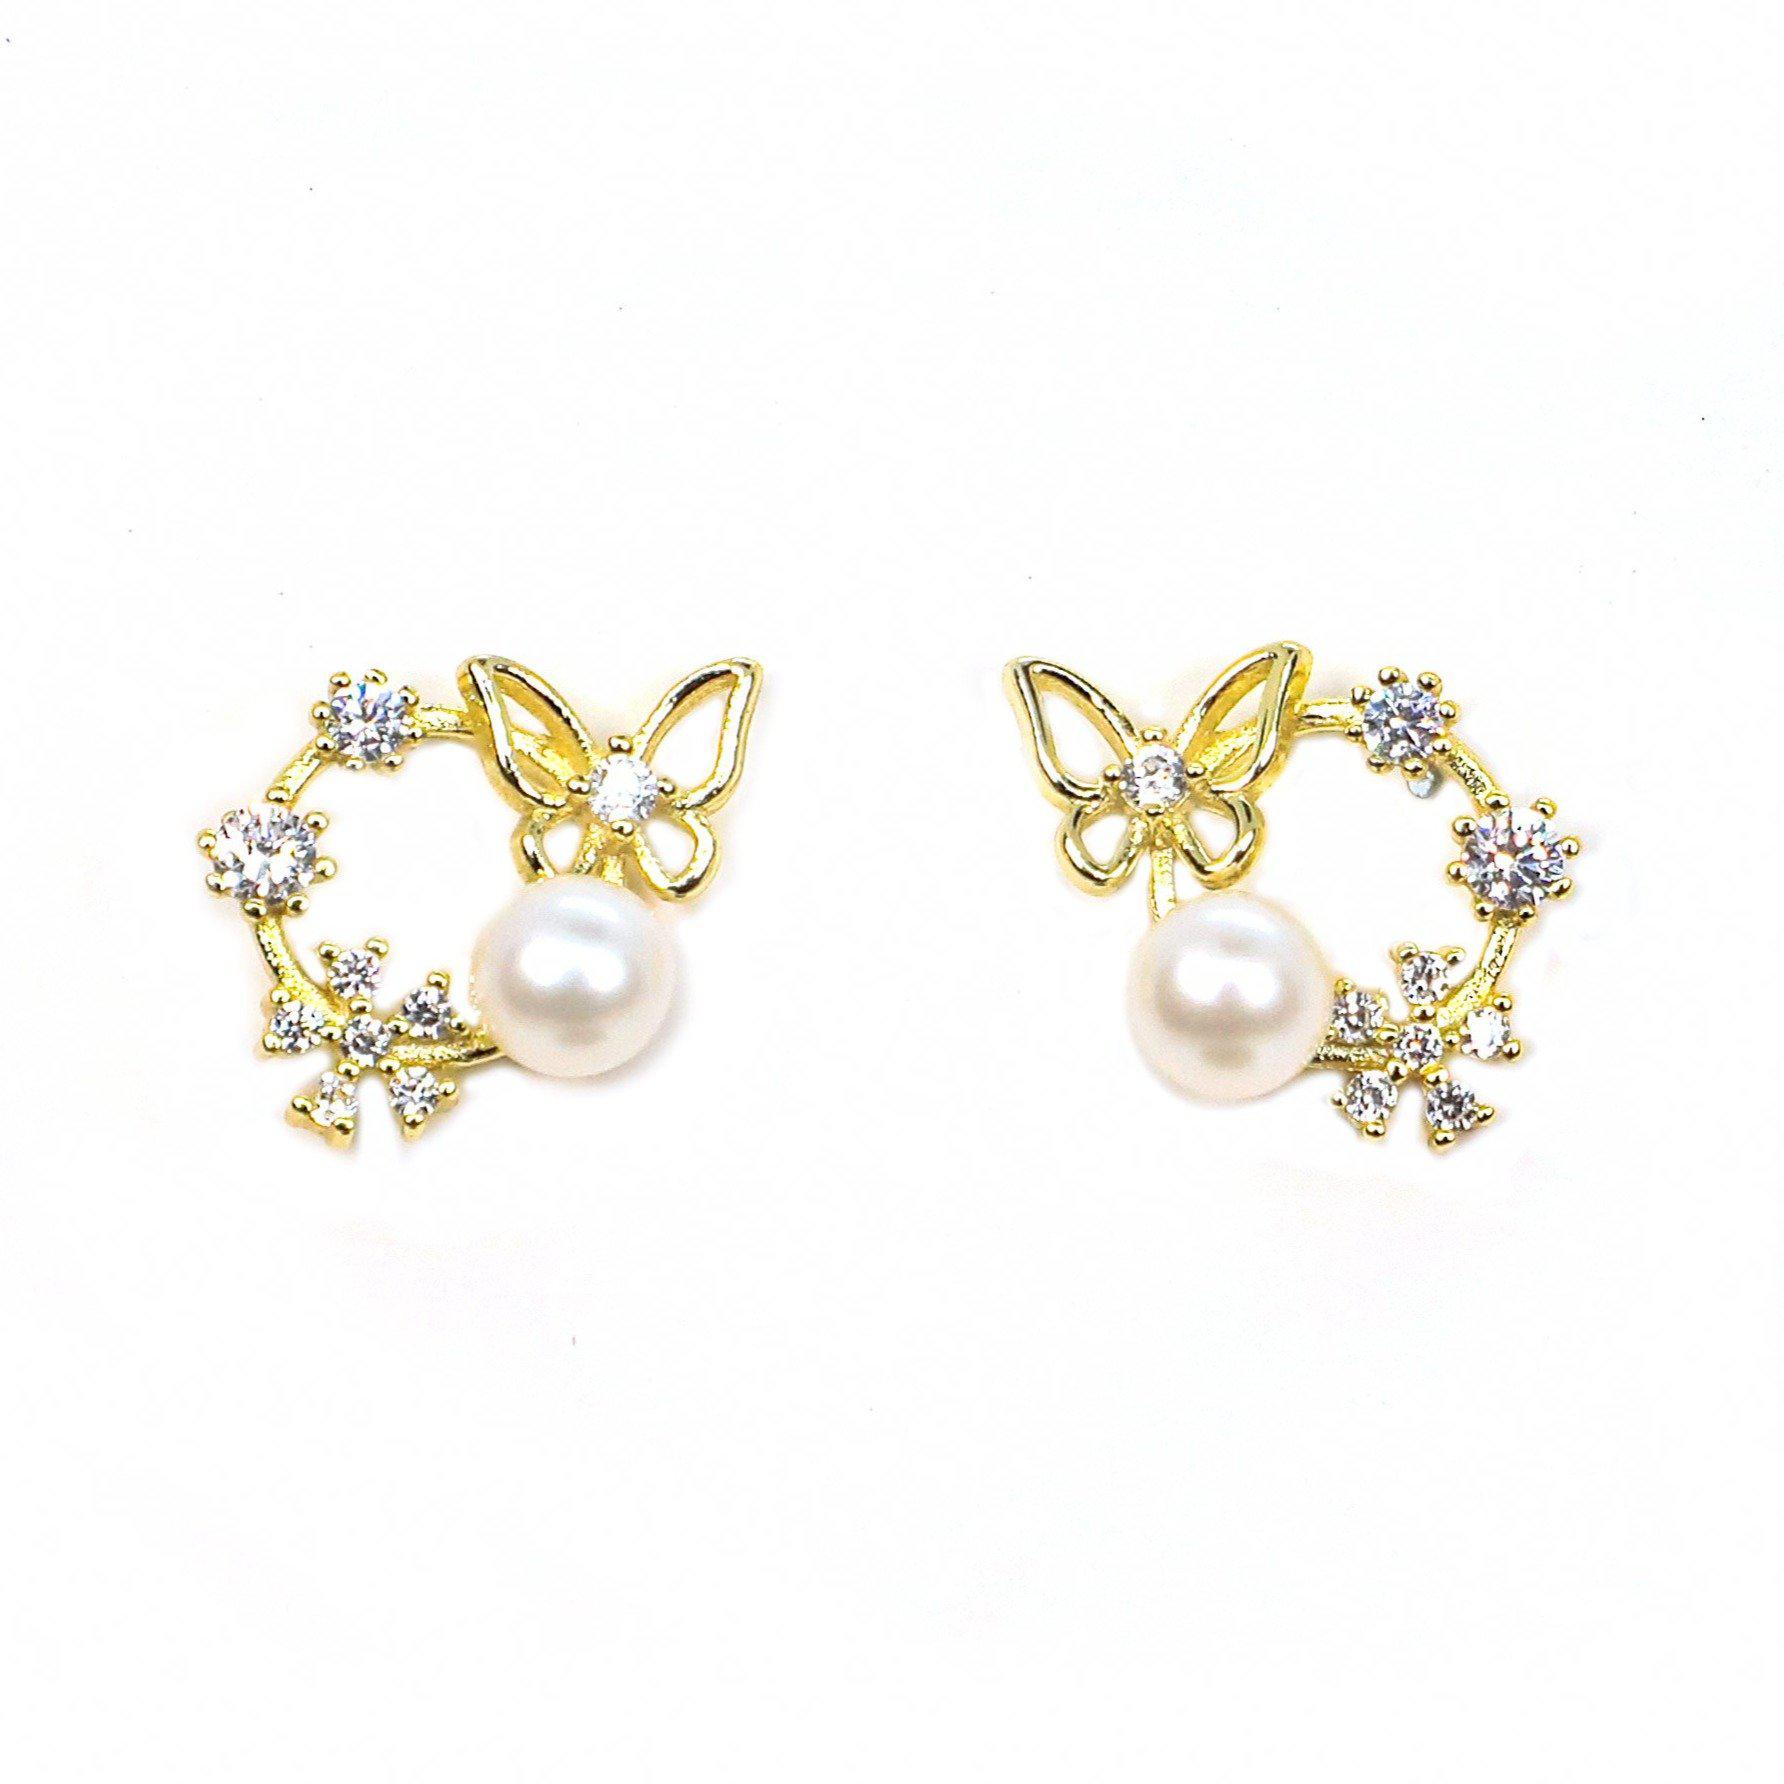 Romantic Butterfly Earrings